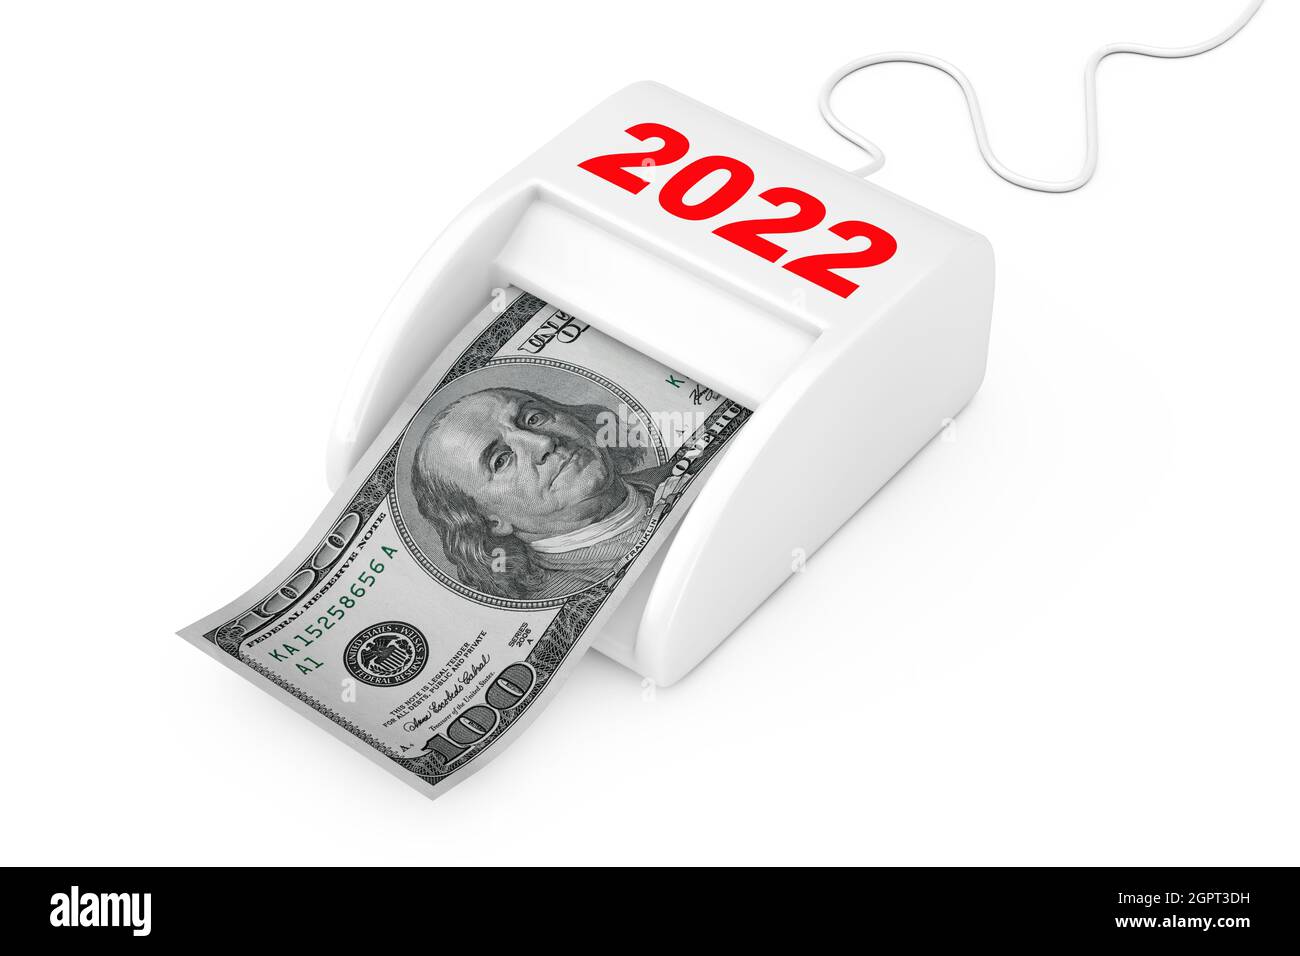 Hãy kiếm thật nhiều tiền trong năm mới 2022 để thỏa mãn tất cả những mong muốn của mình. Hãy thưởng thức hình ảnh liên quan đến kiếm tiền để truyền cảm hứng cho những kế hoạch tài chính của bạn trong năm mới.